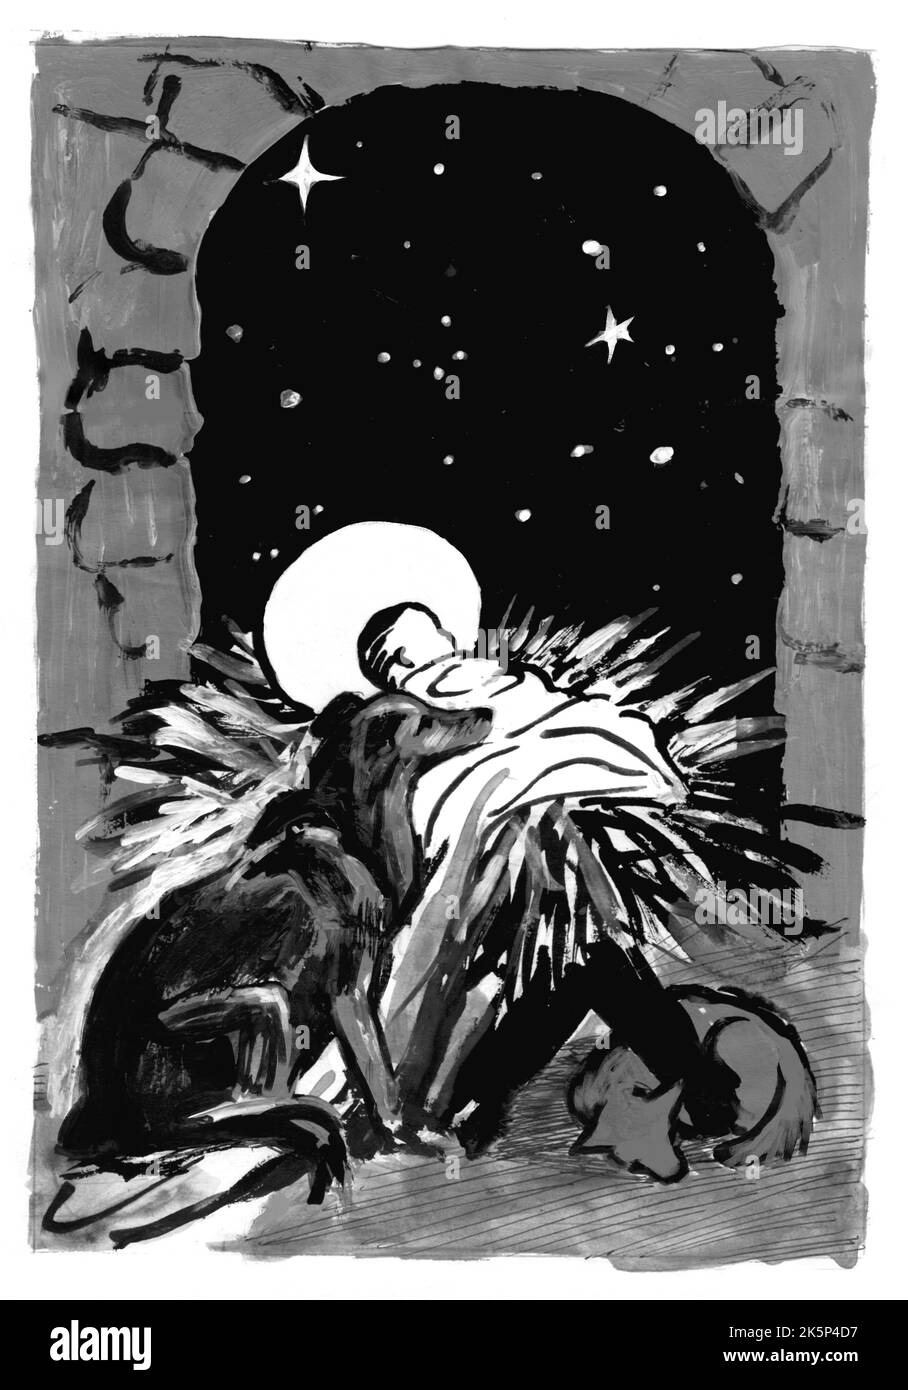 Weihnachten, handgemachte Karte, Version mit Haustieren. Zwei Hunde schlafen in einem Stall des neugeborenen Jesus. Monochrome Illustration von Hand gefertigt. Stockfoto